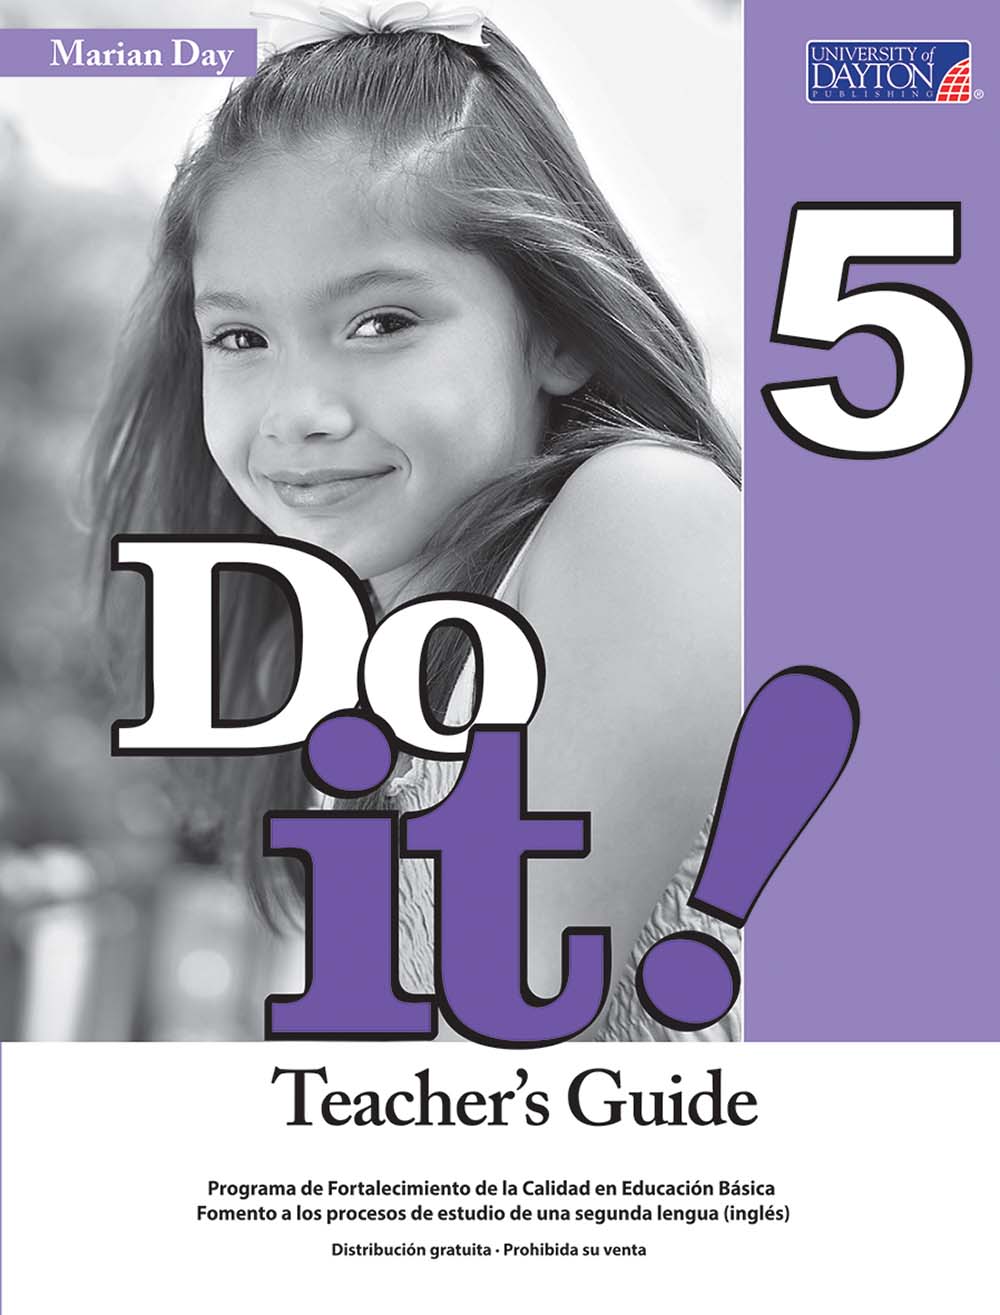 Do It! 5 Guía Didáctica, Editorial: University of Dayton Publishing, Nivel: Primaria, Grado: 5